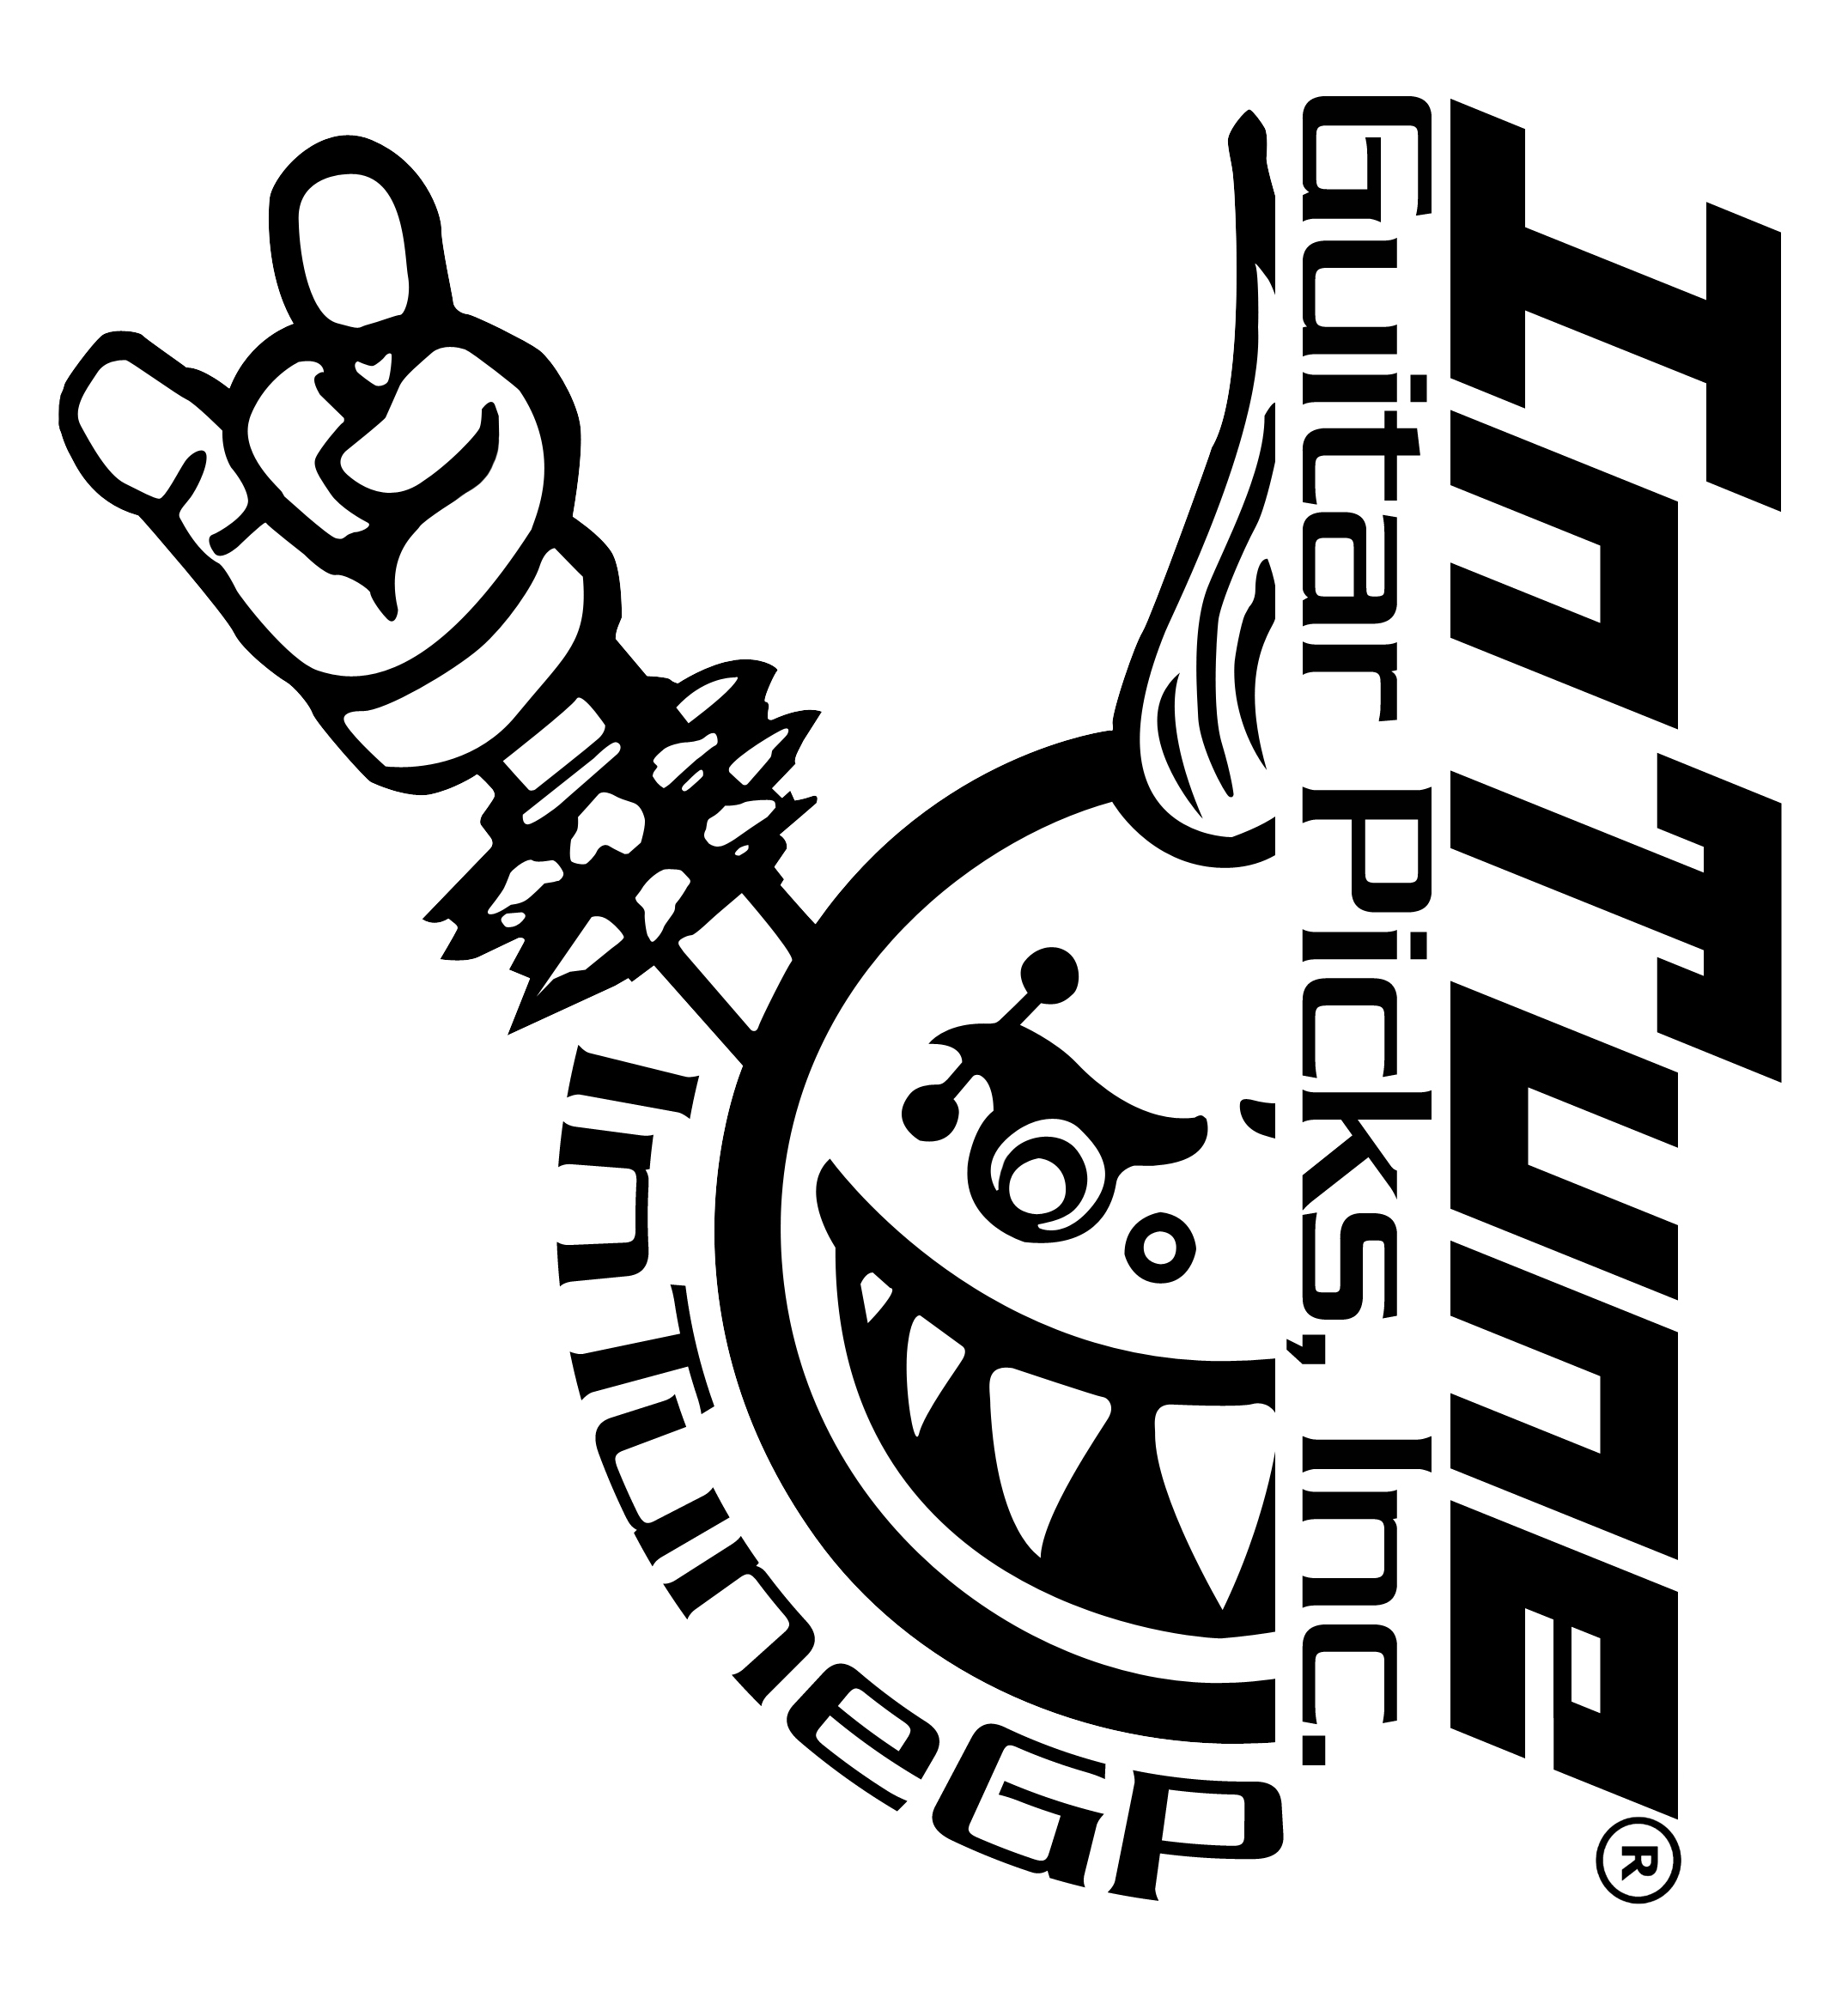 InTuneGP Logos (Black and White Logo) 